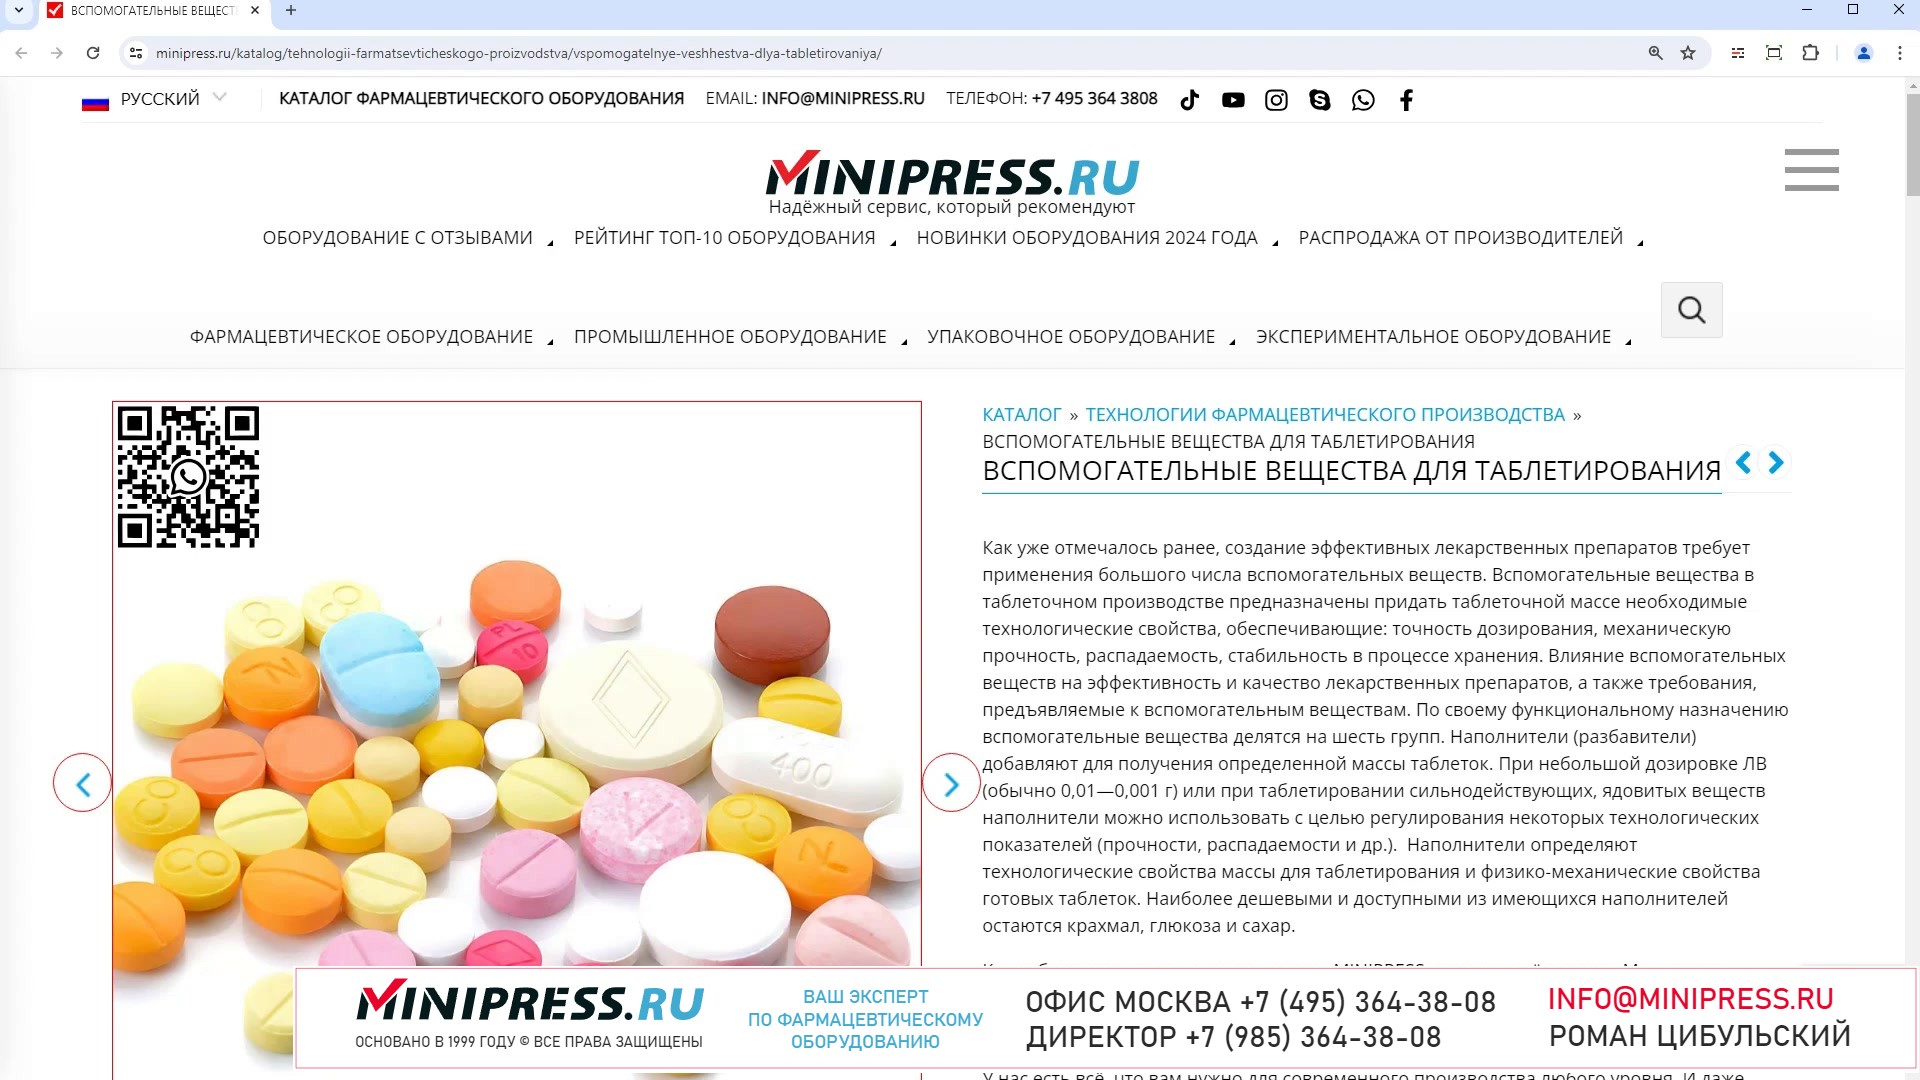 Minipress.ru Вспомогательные вещества для таблетирования